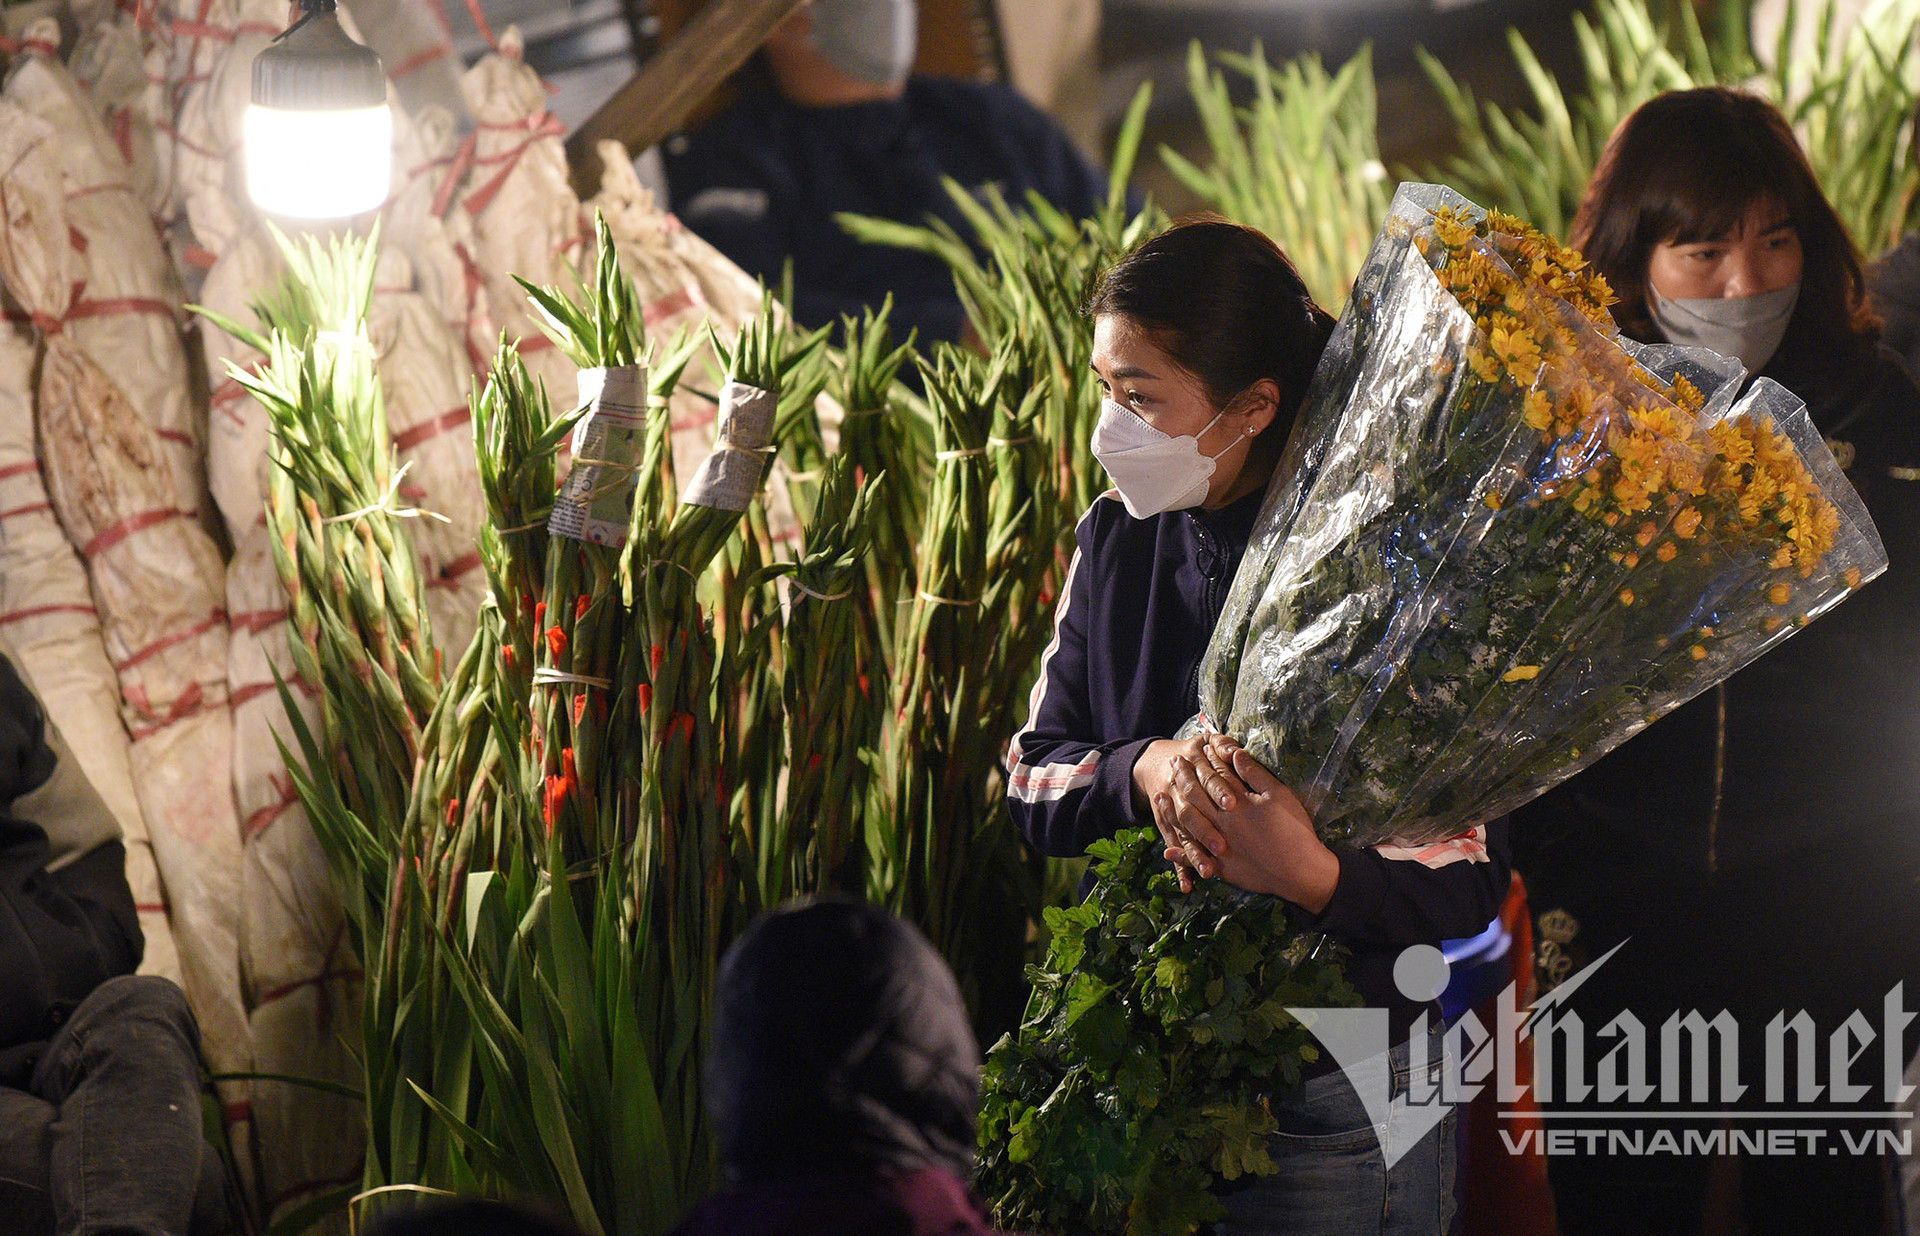 Sáng sớm đến đêm khuya, chen chúc ở chợ hoa lớn nhất Hà Nội